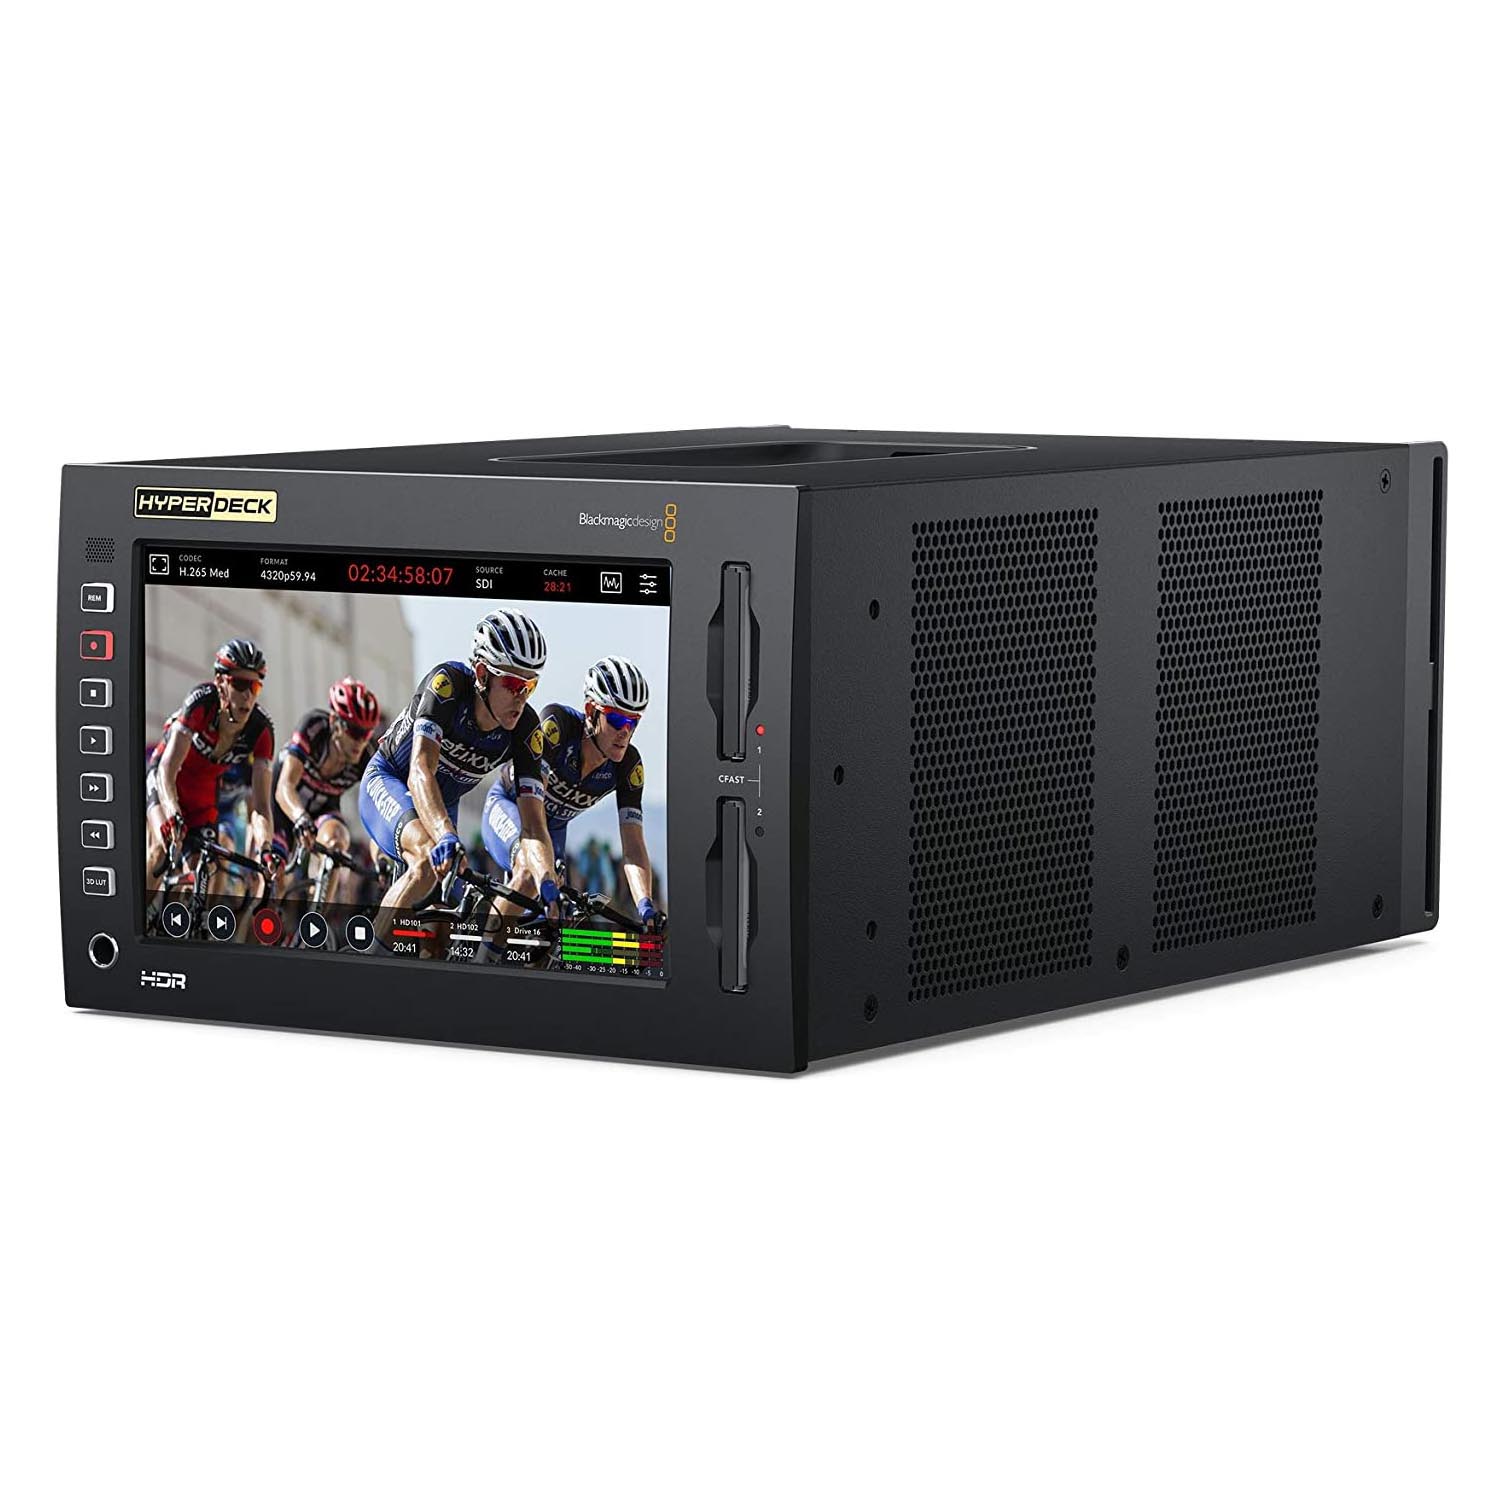 Рекордер Blackmagic Design HyperDeck Extreme 8K HDR, черный монитор рекордер blackmagic video assist 7 12g hdr